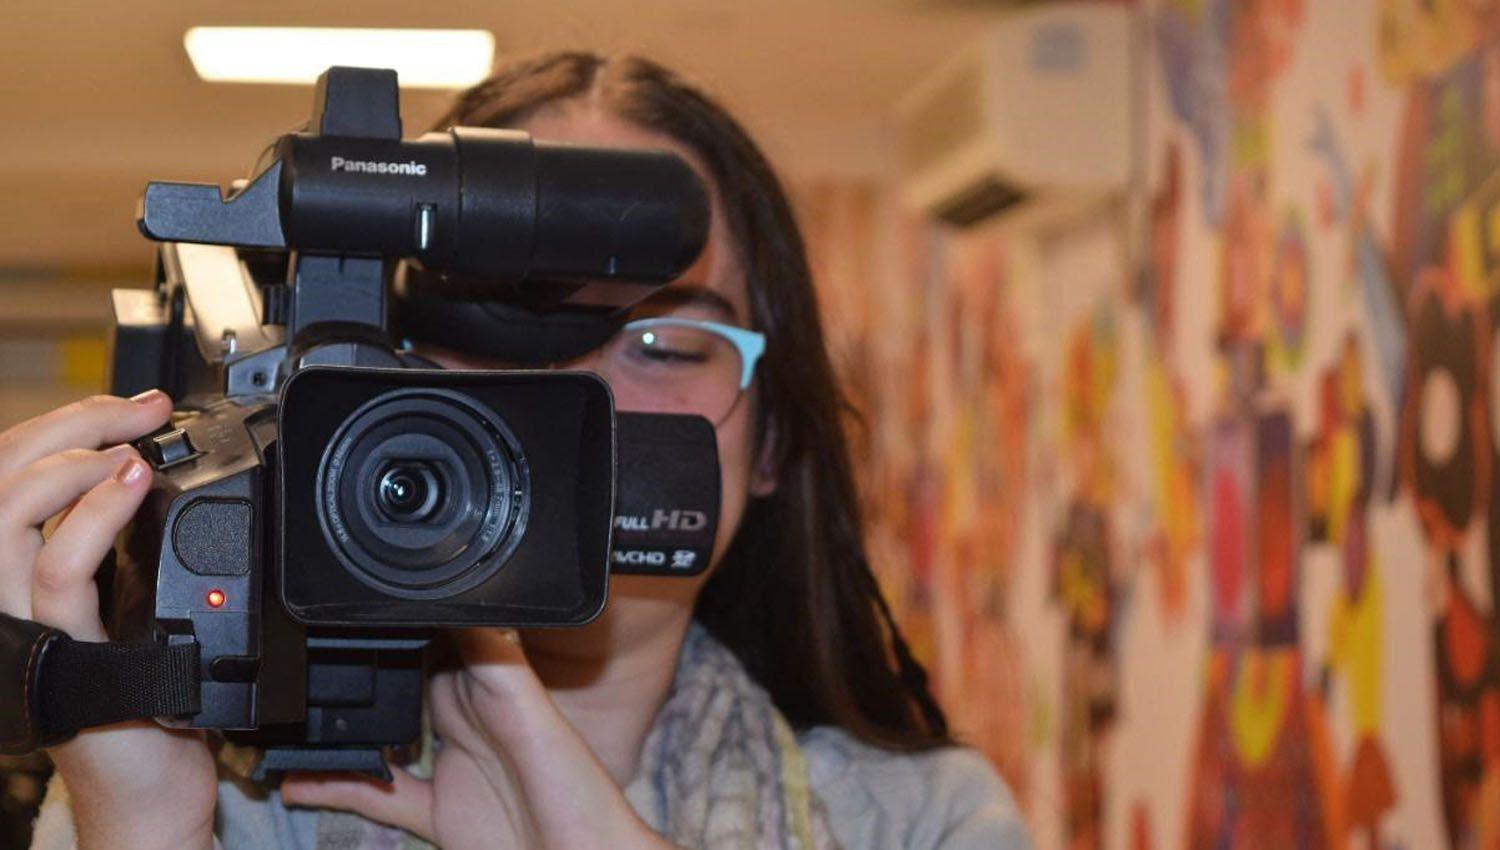 Joacutevenes podraacuten sumarse al taller de realizacioacuten de cortometrajes en el CCB